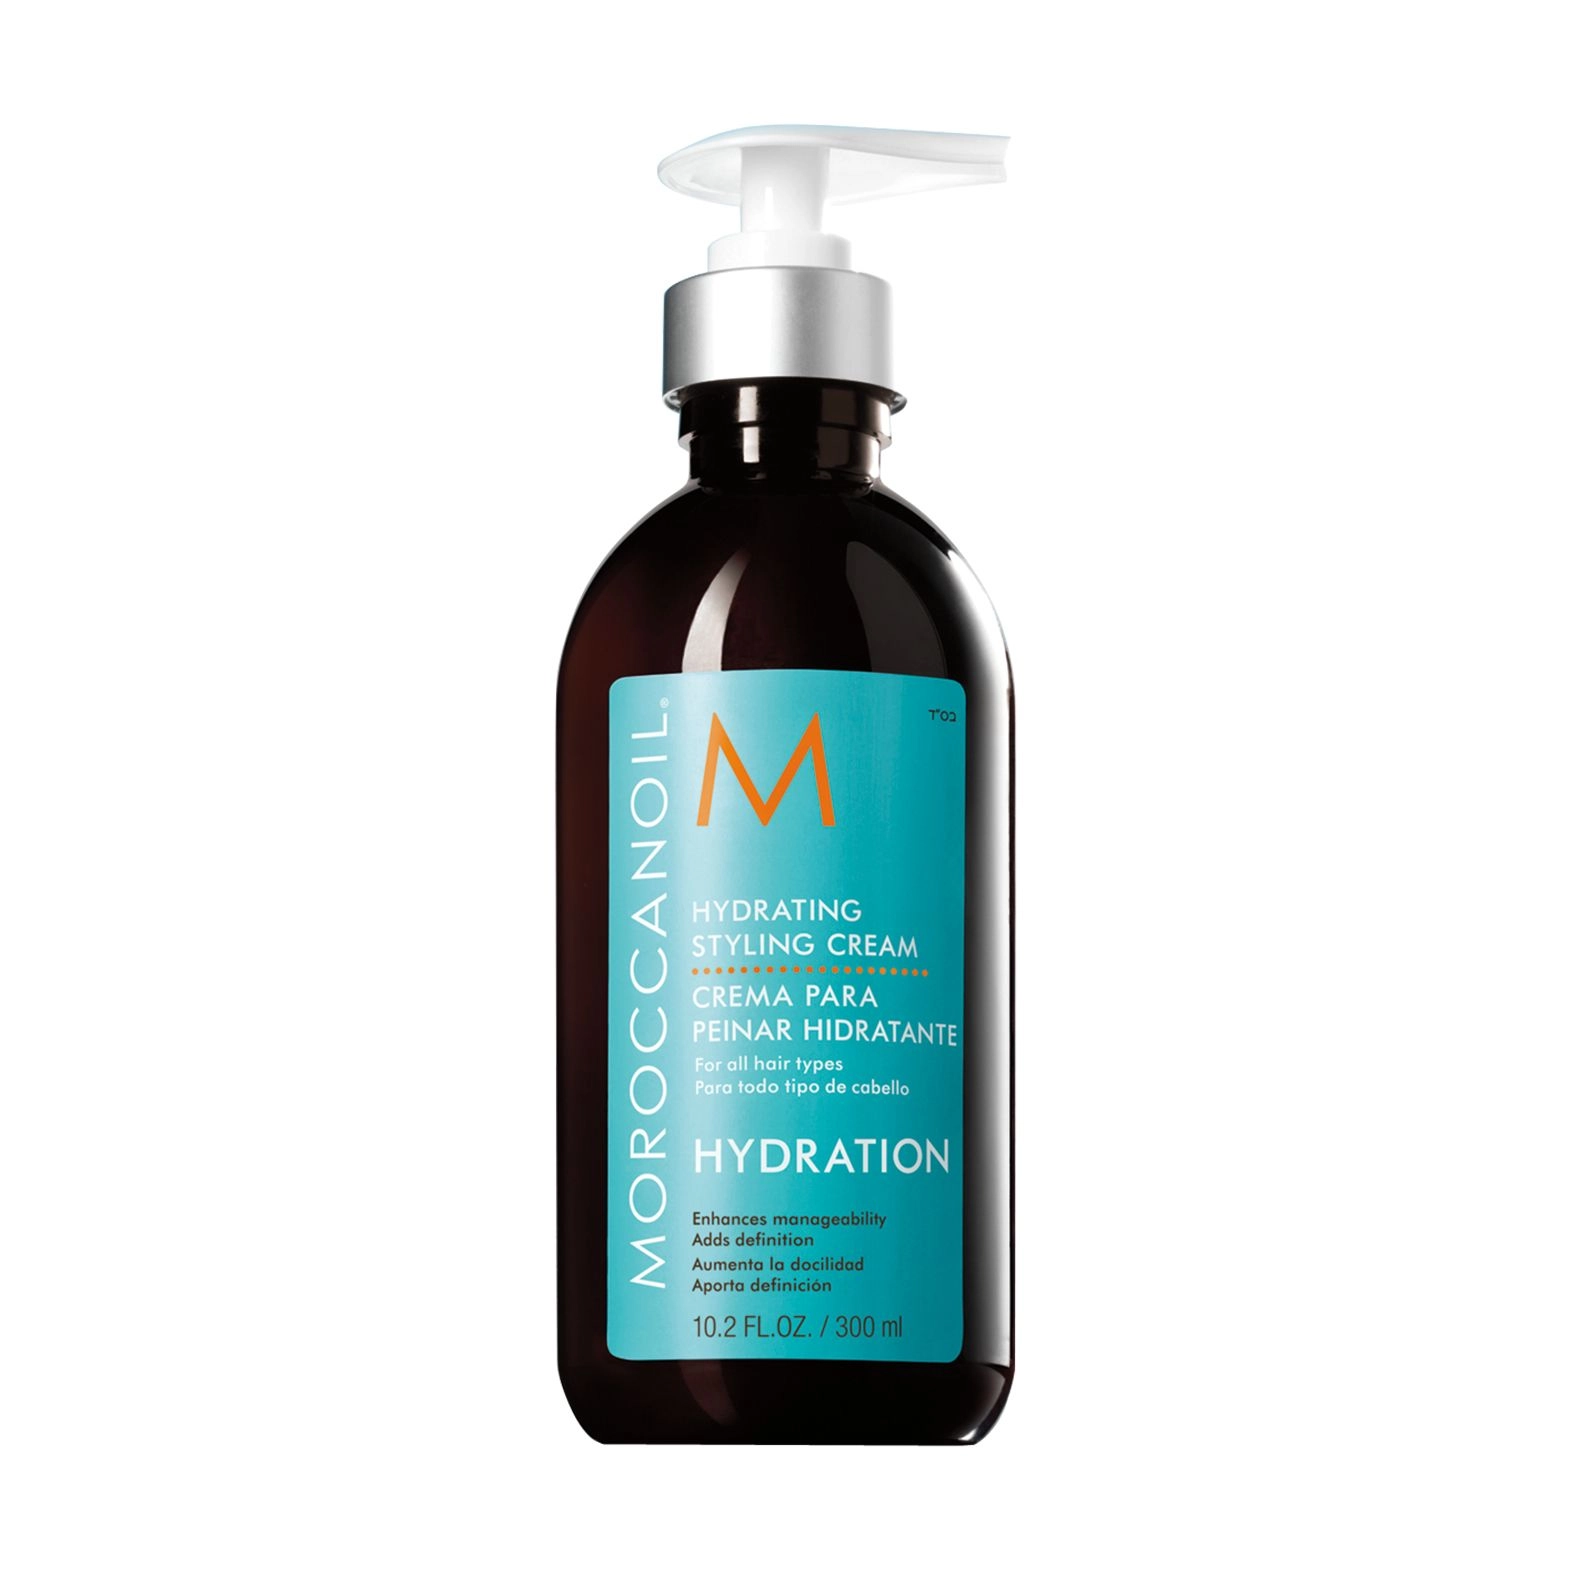 Зволожуючий крем для укладання волосся - Moroccanoil Hydrating Styling Cream, 300 мл - фото N1